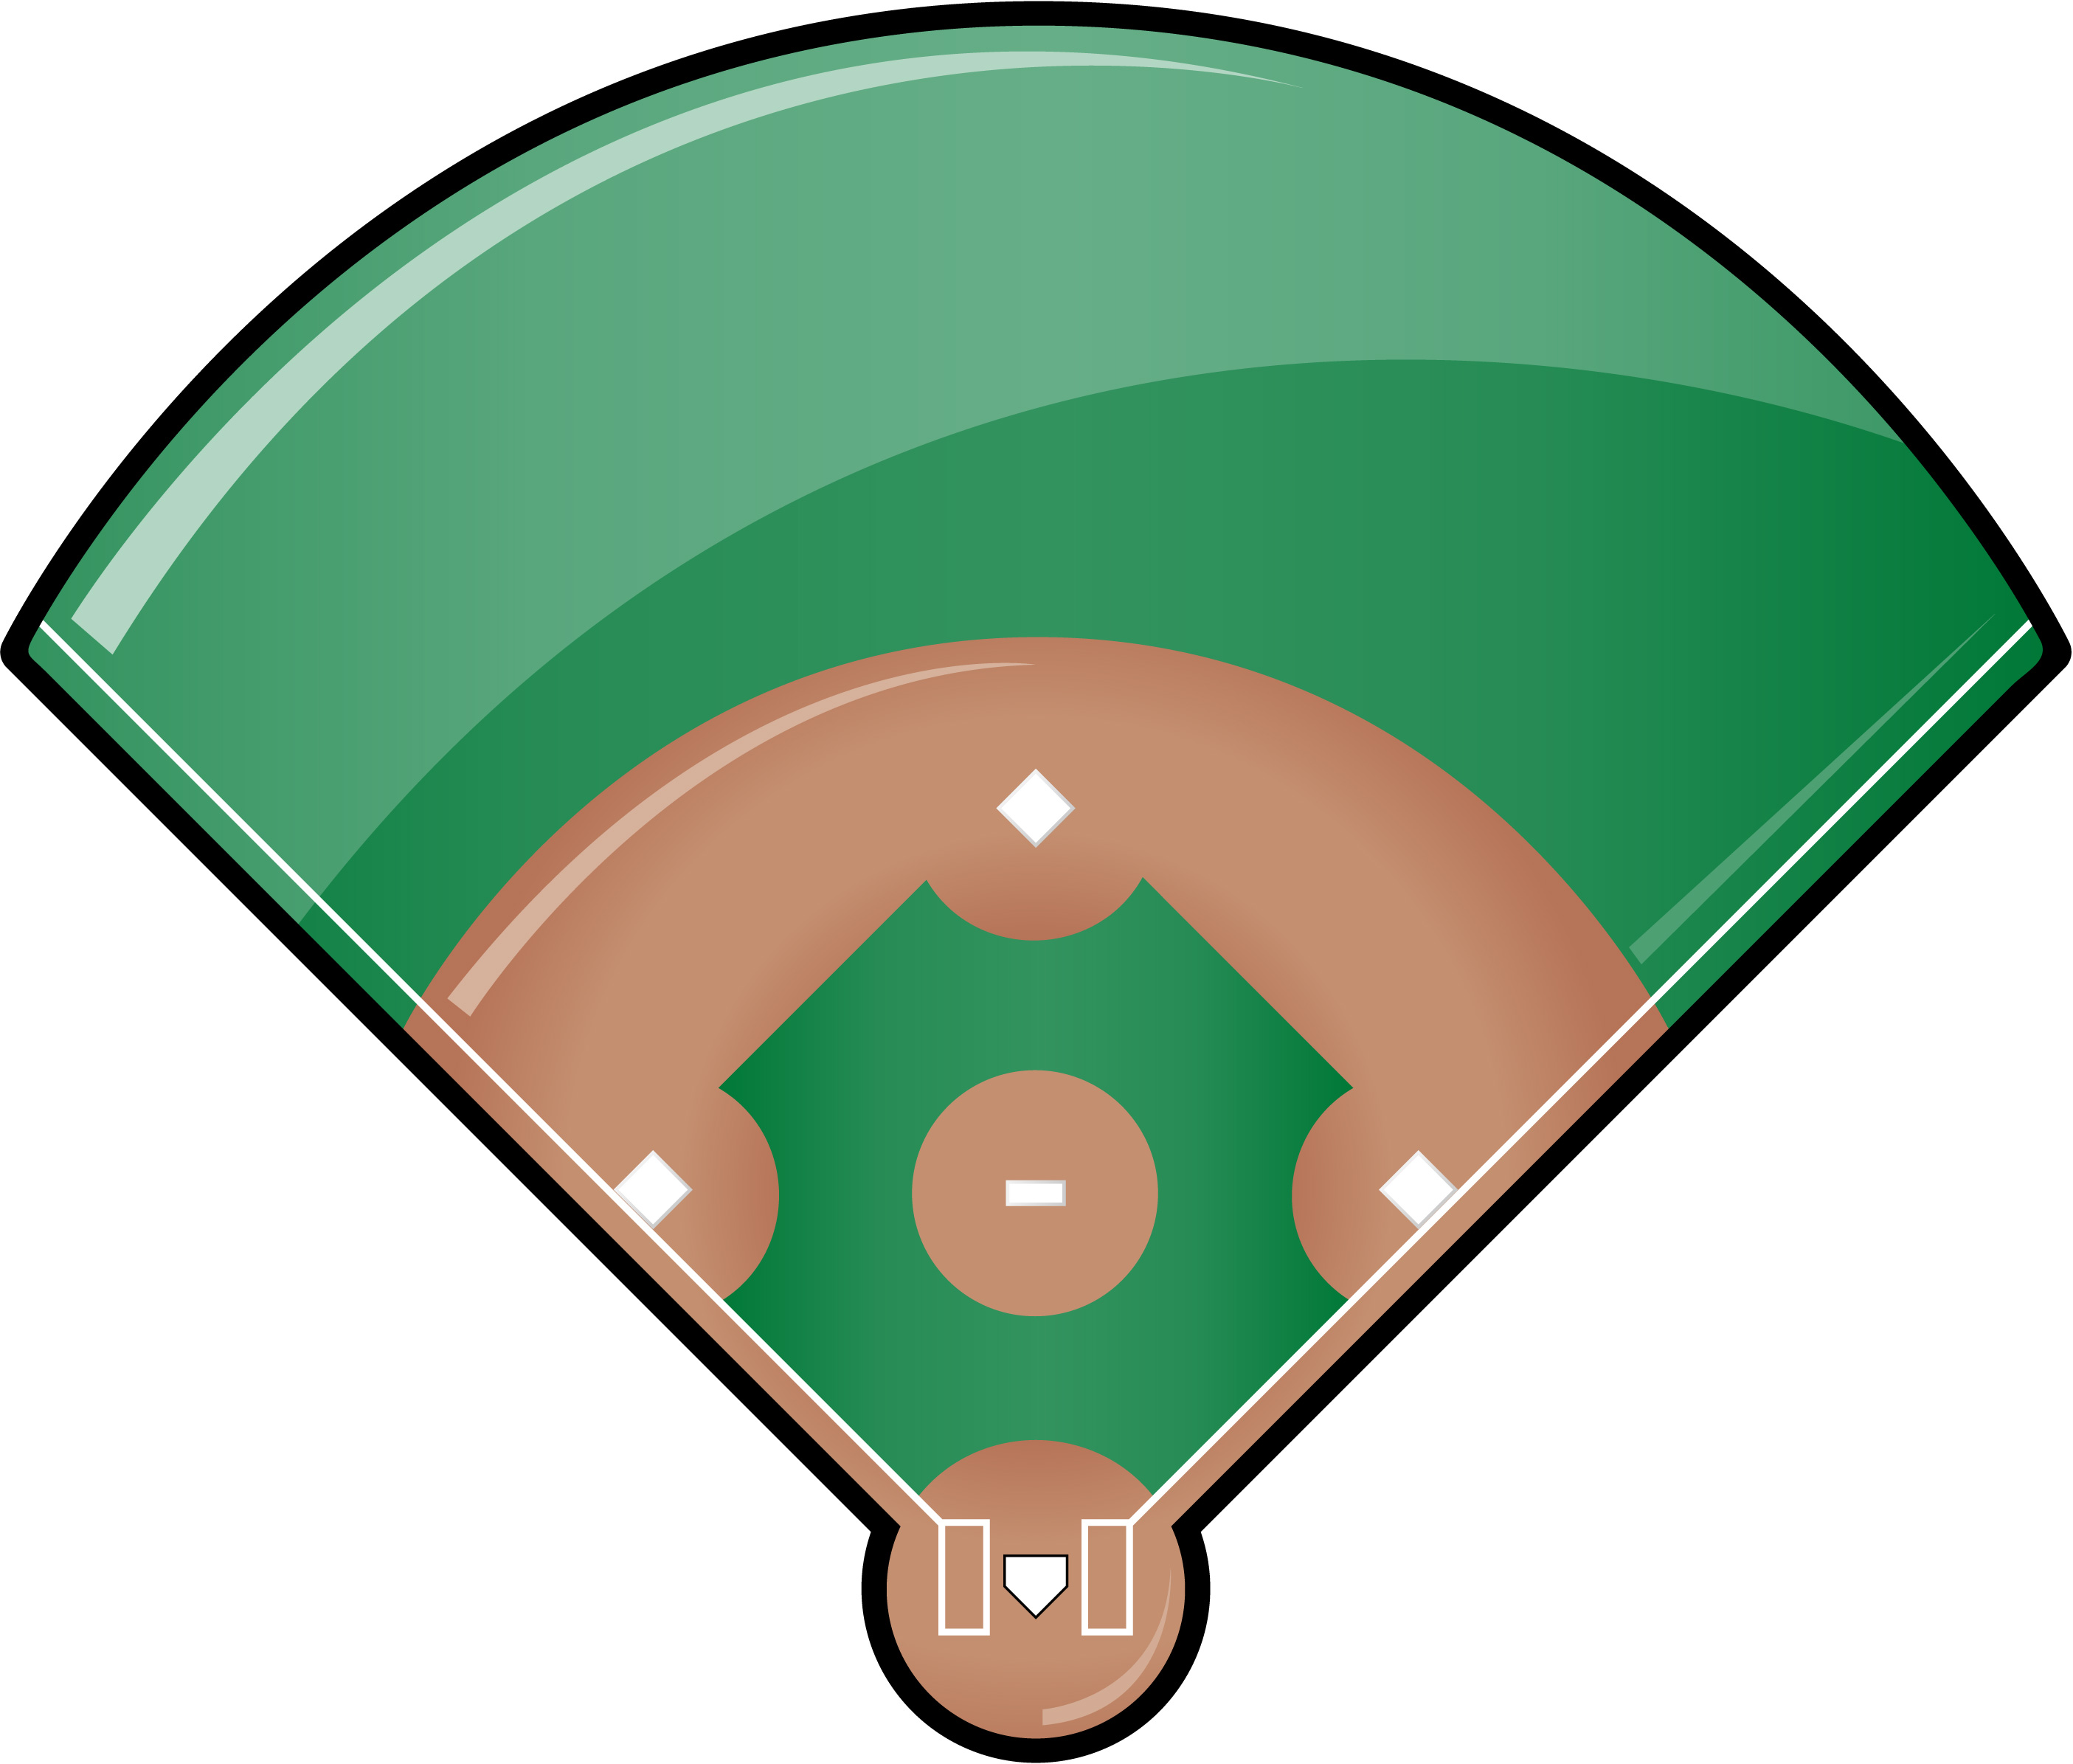 Baseball Field Templates - ClipArt Best